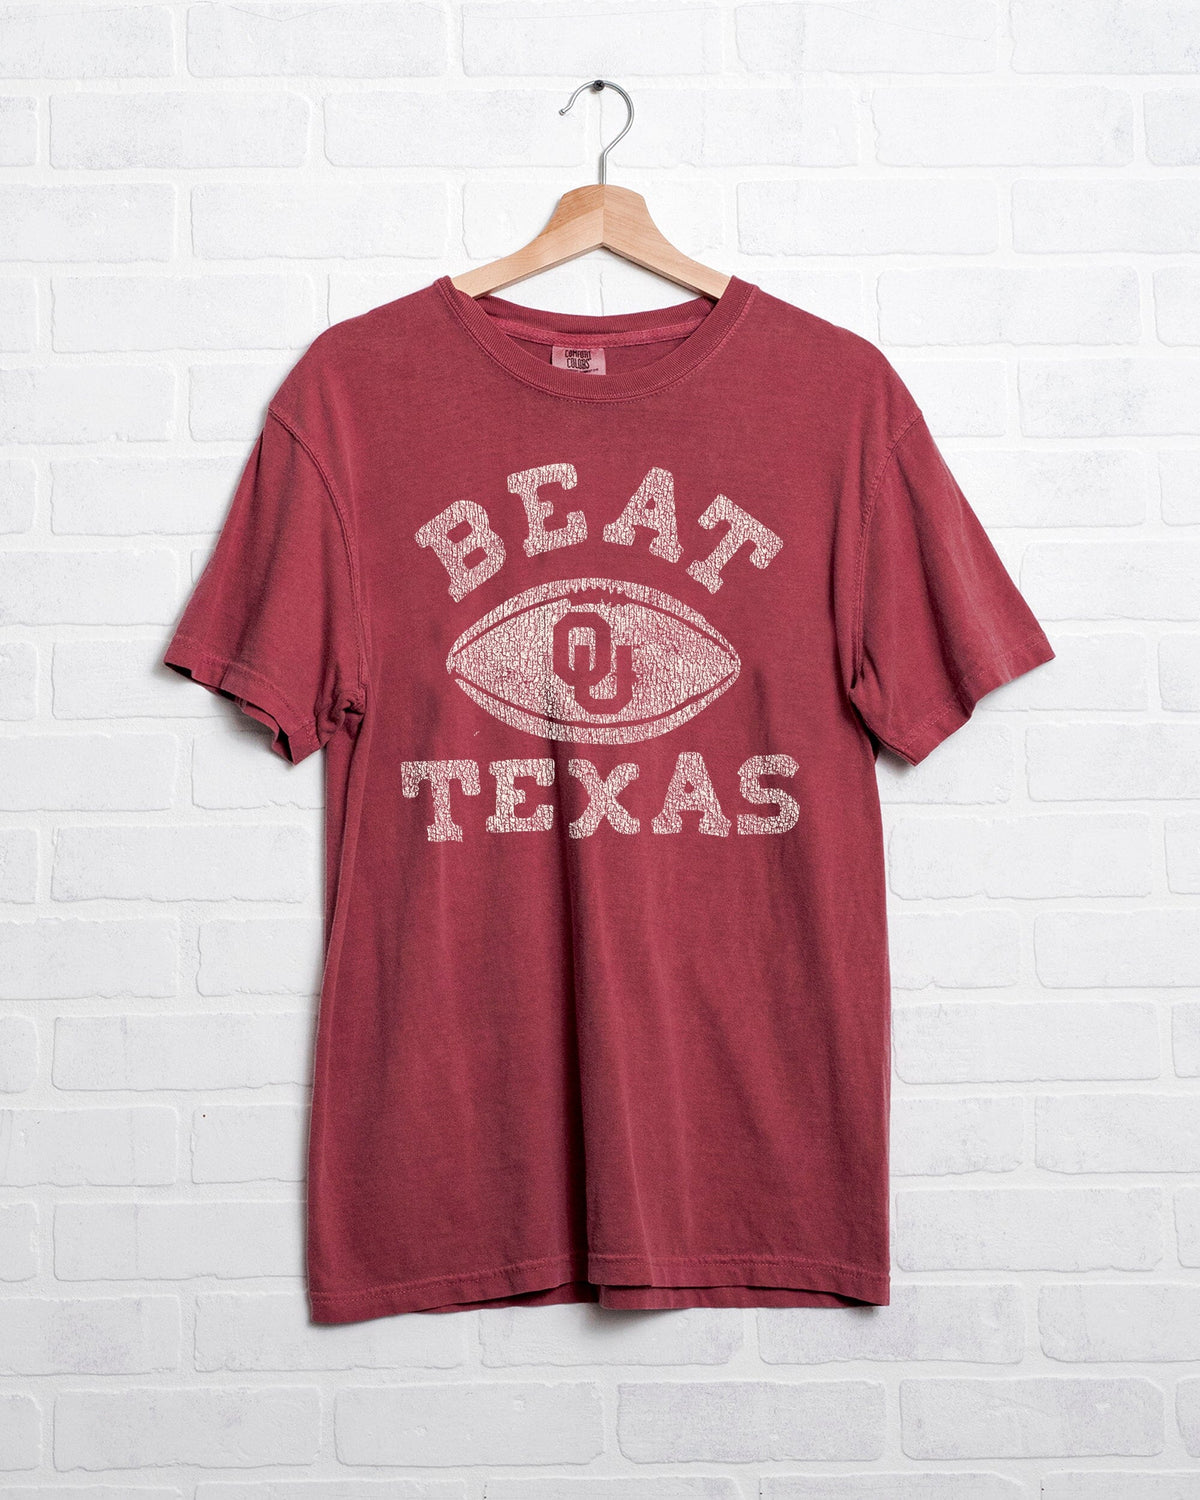 OU Beat Texas Football Crimson Tee